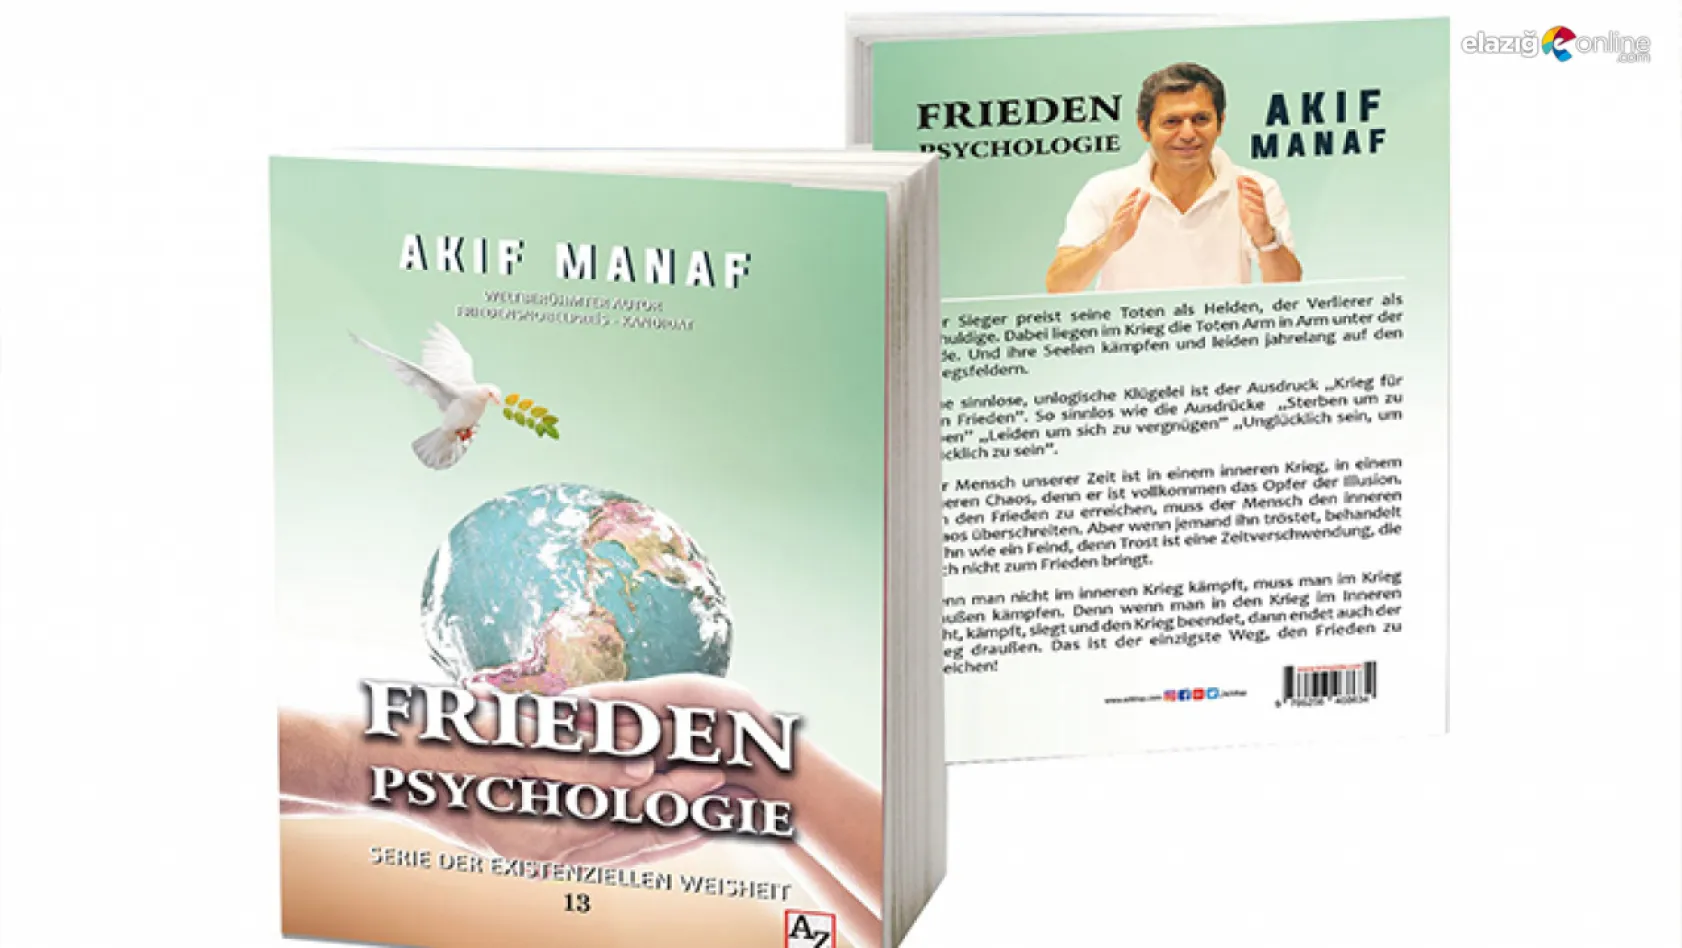 Dünyaca ünlü Yazar Akif Manaf'ın 'Barış Psikolojisi' eseri Almanca yayımlandı